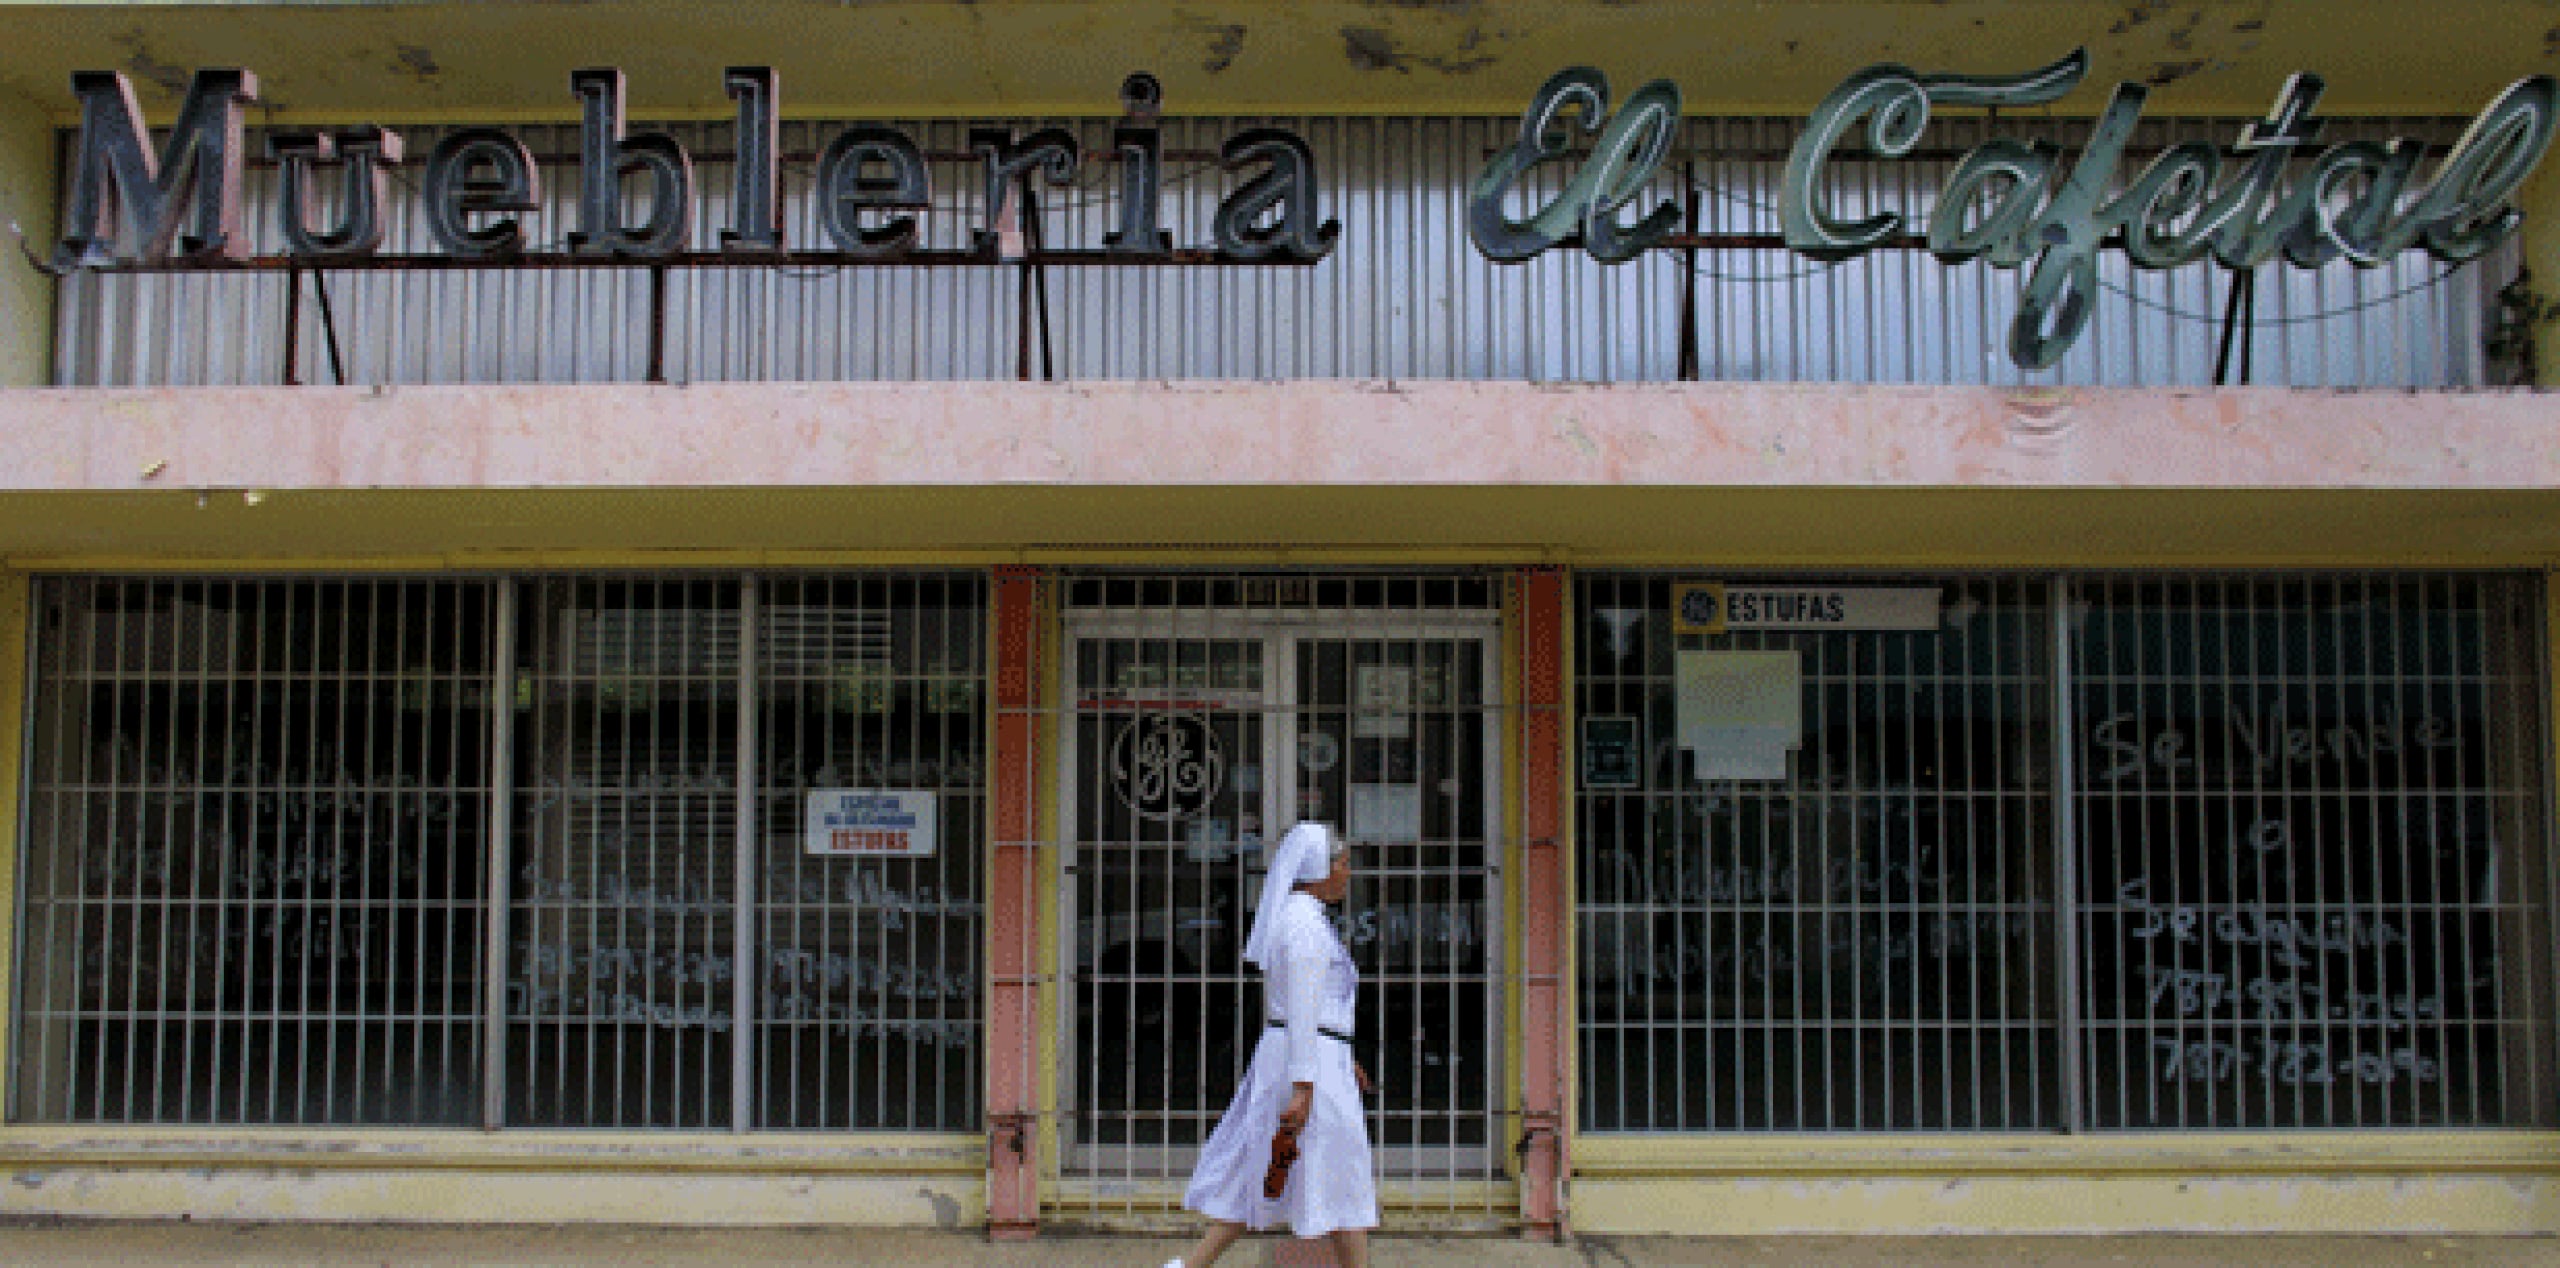 Esta ciudad de unos 30,000 habitantes ha perdido más residentes que ninguna otra municipalidad puertorriqueña en los últimos cuatro años y tiene la segunda tasa de desempleo más alta de la isla, 22%. (AP Photo/Ricardo Arduengo)